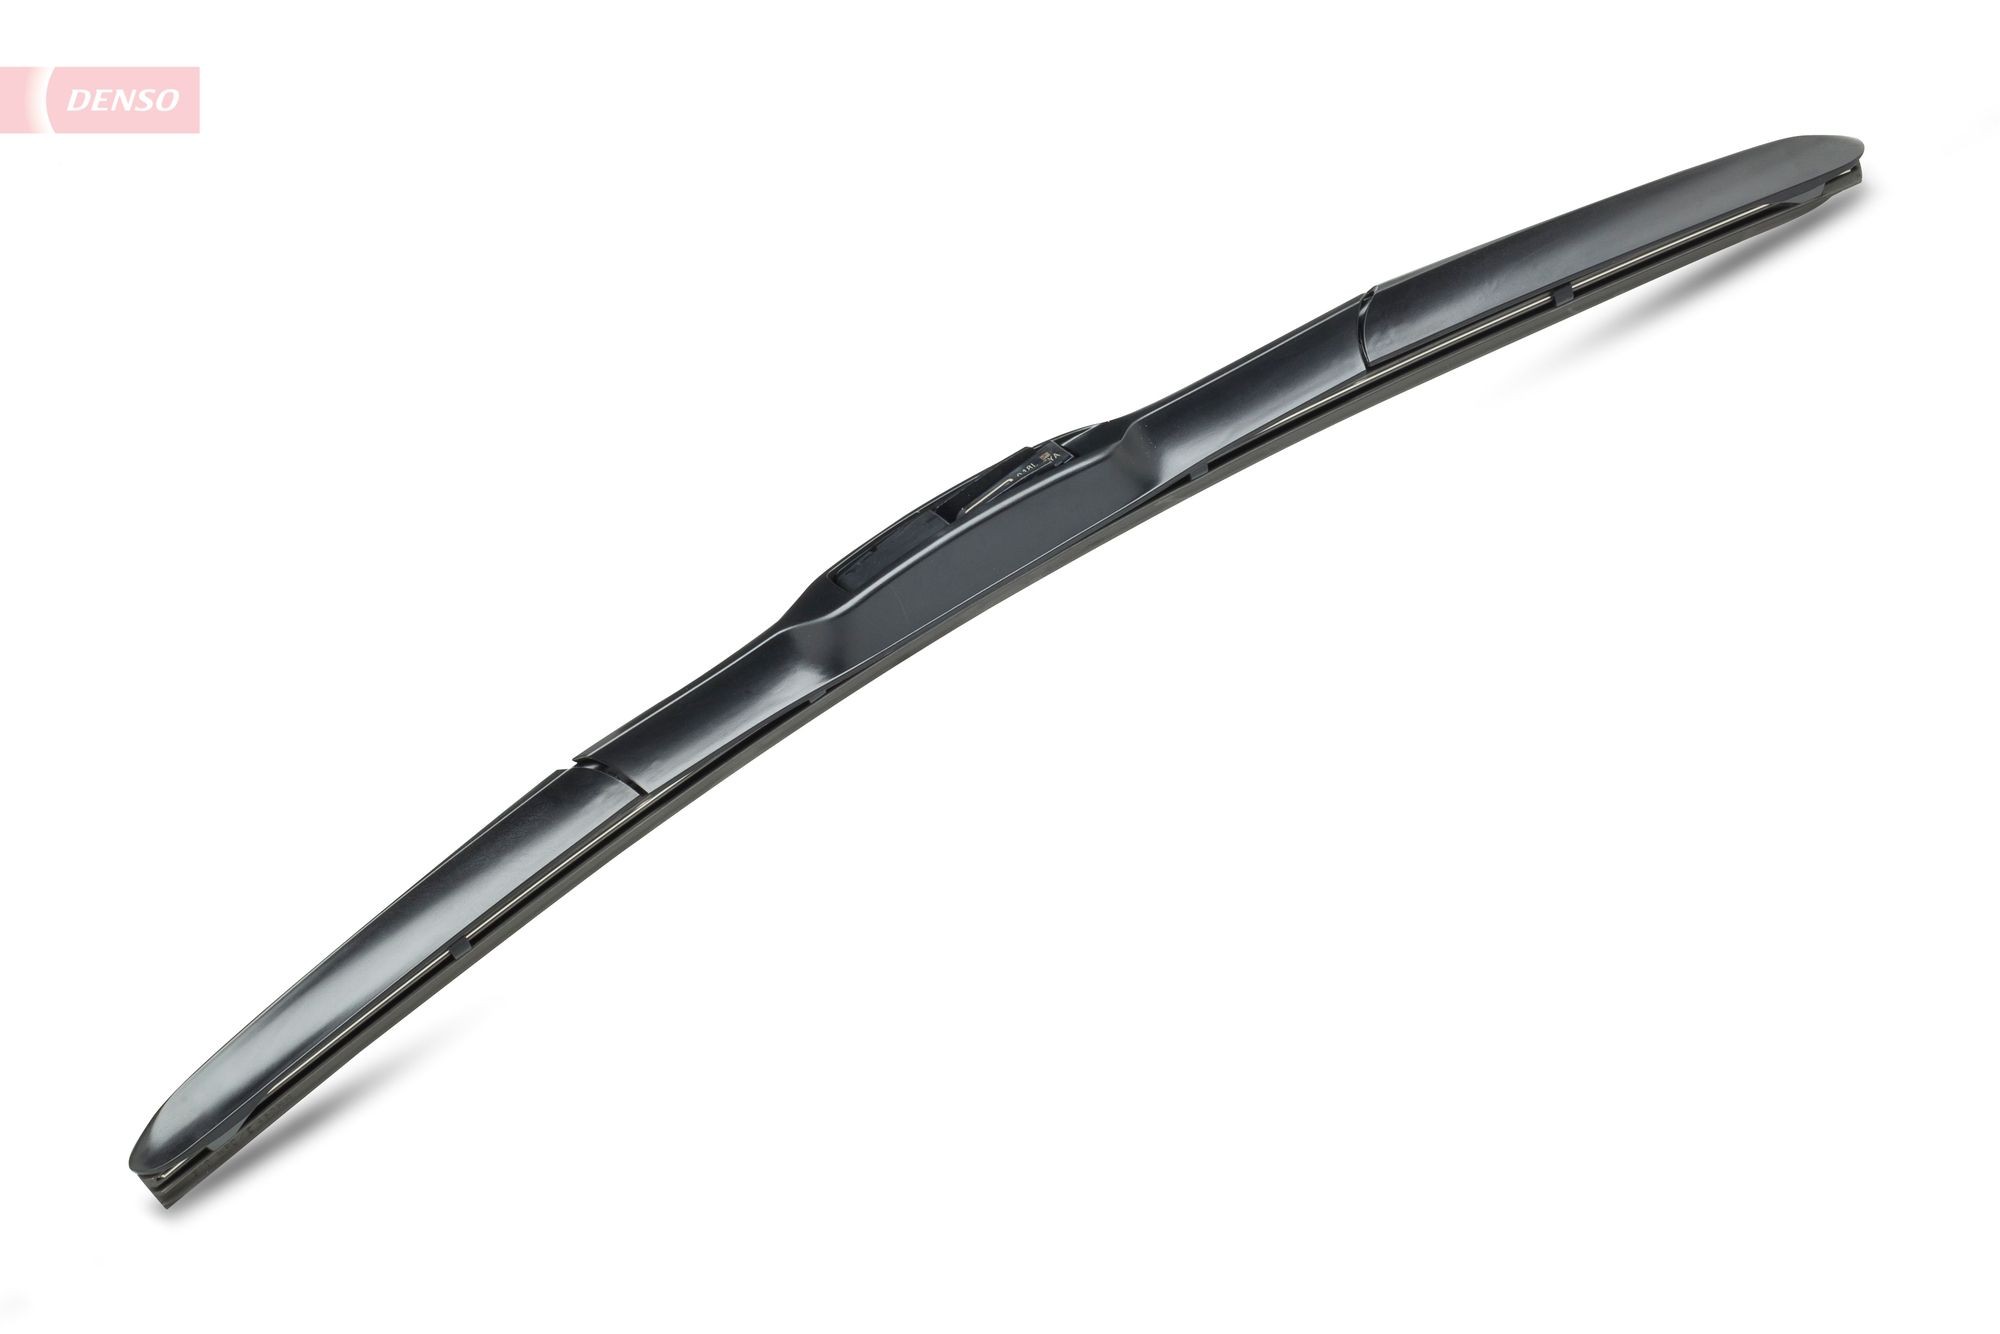 DENSO Hybrid 450 mm, Hybrid Wiper Blade, 18 Inch Wiper blades DU-045L buy